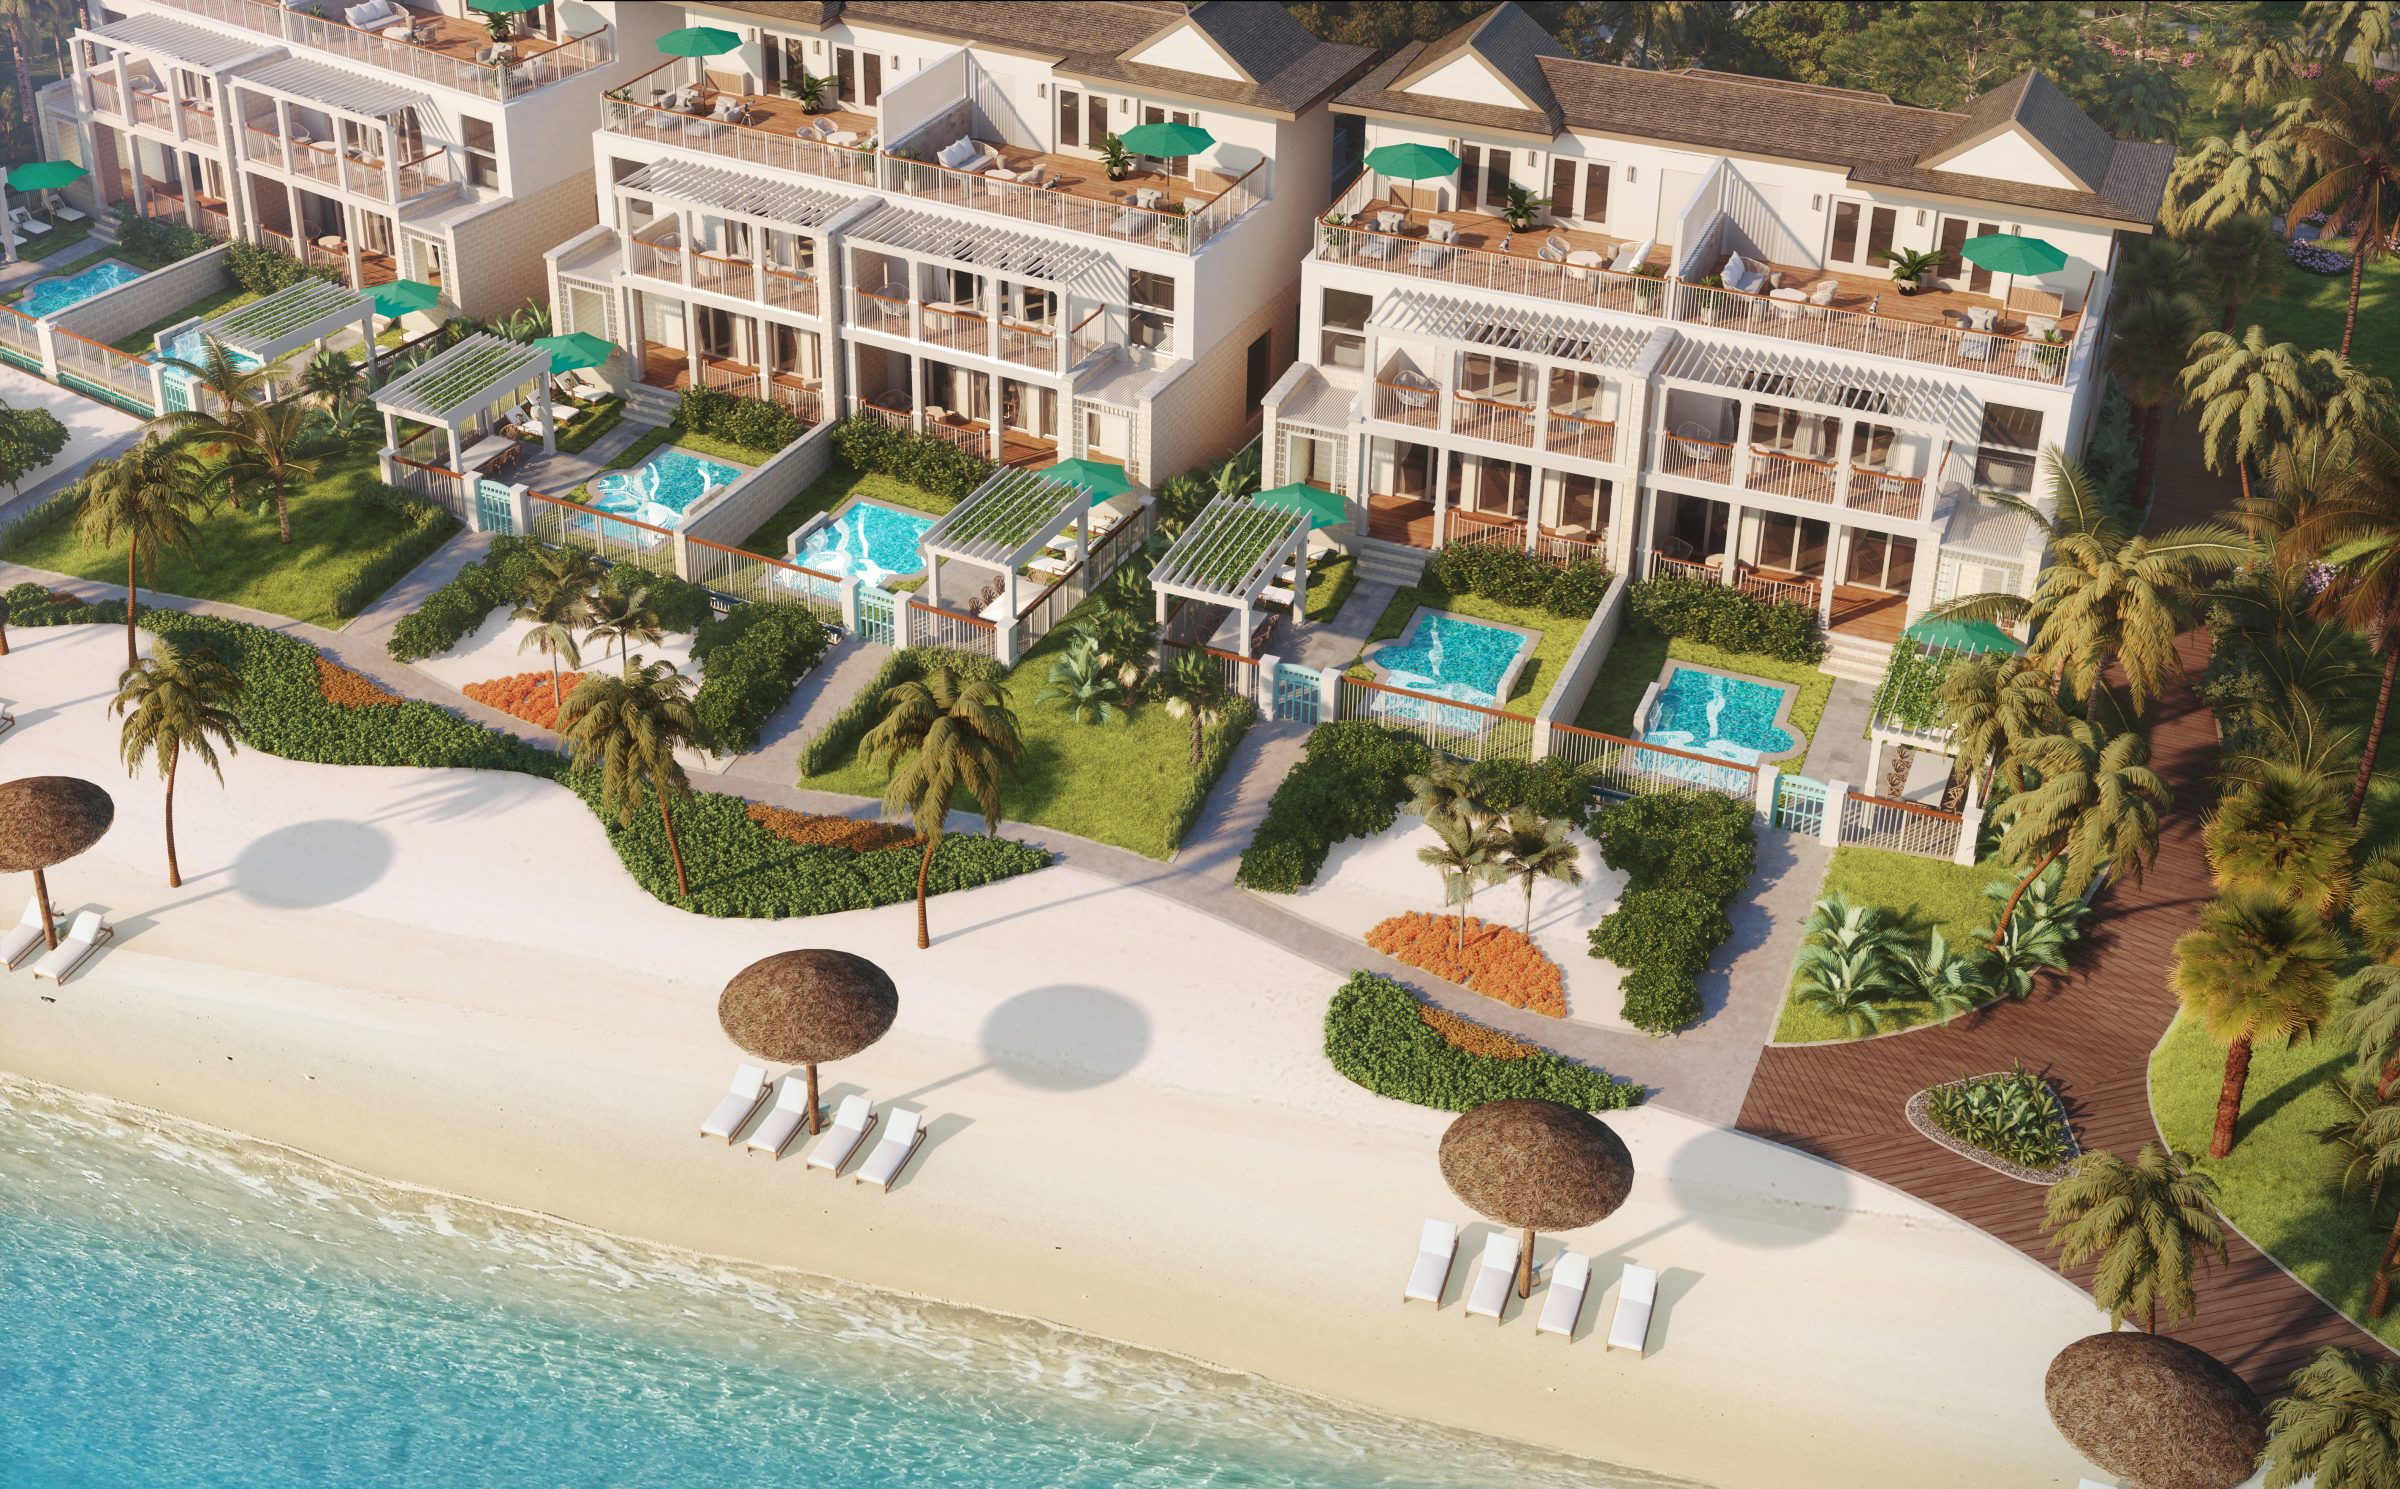 De nieuwe suites van Sandals Negril Beach Resort | St. Lucia